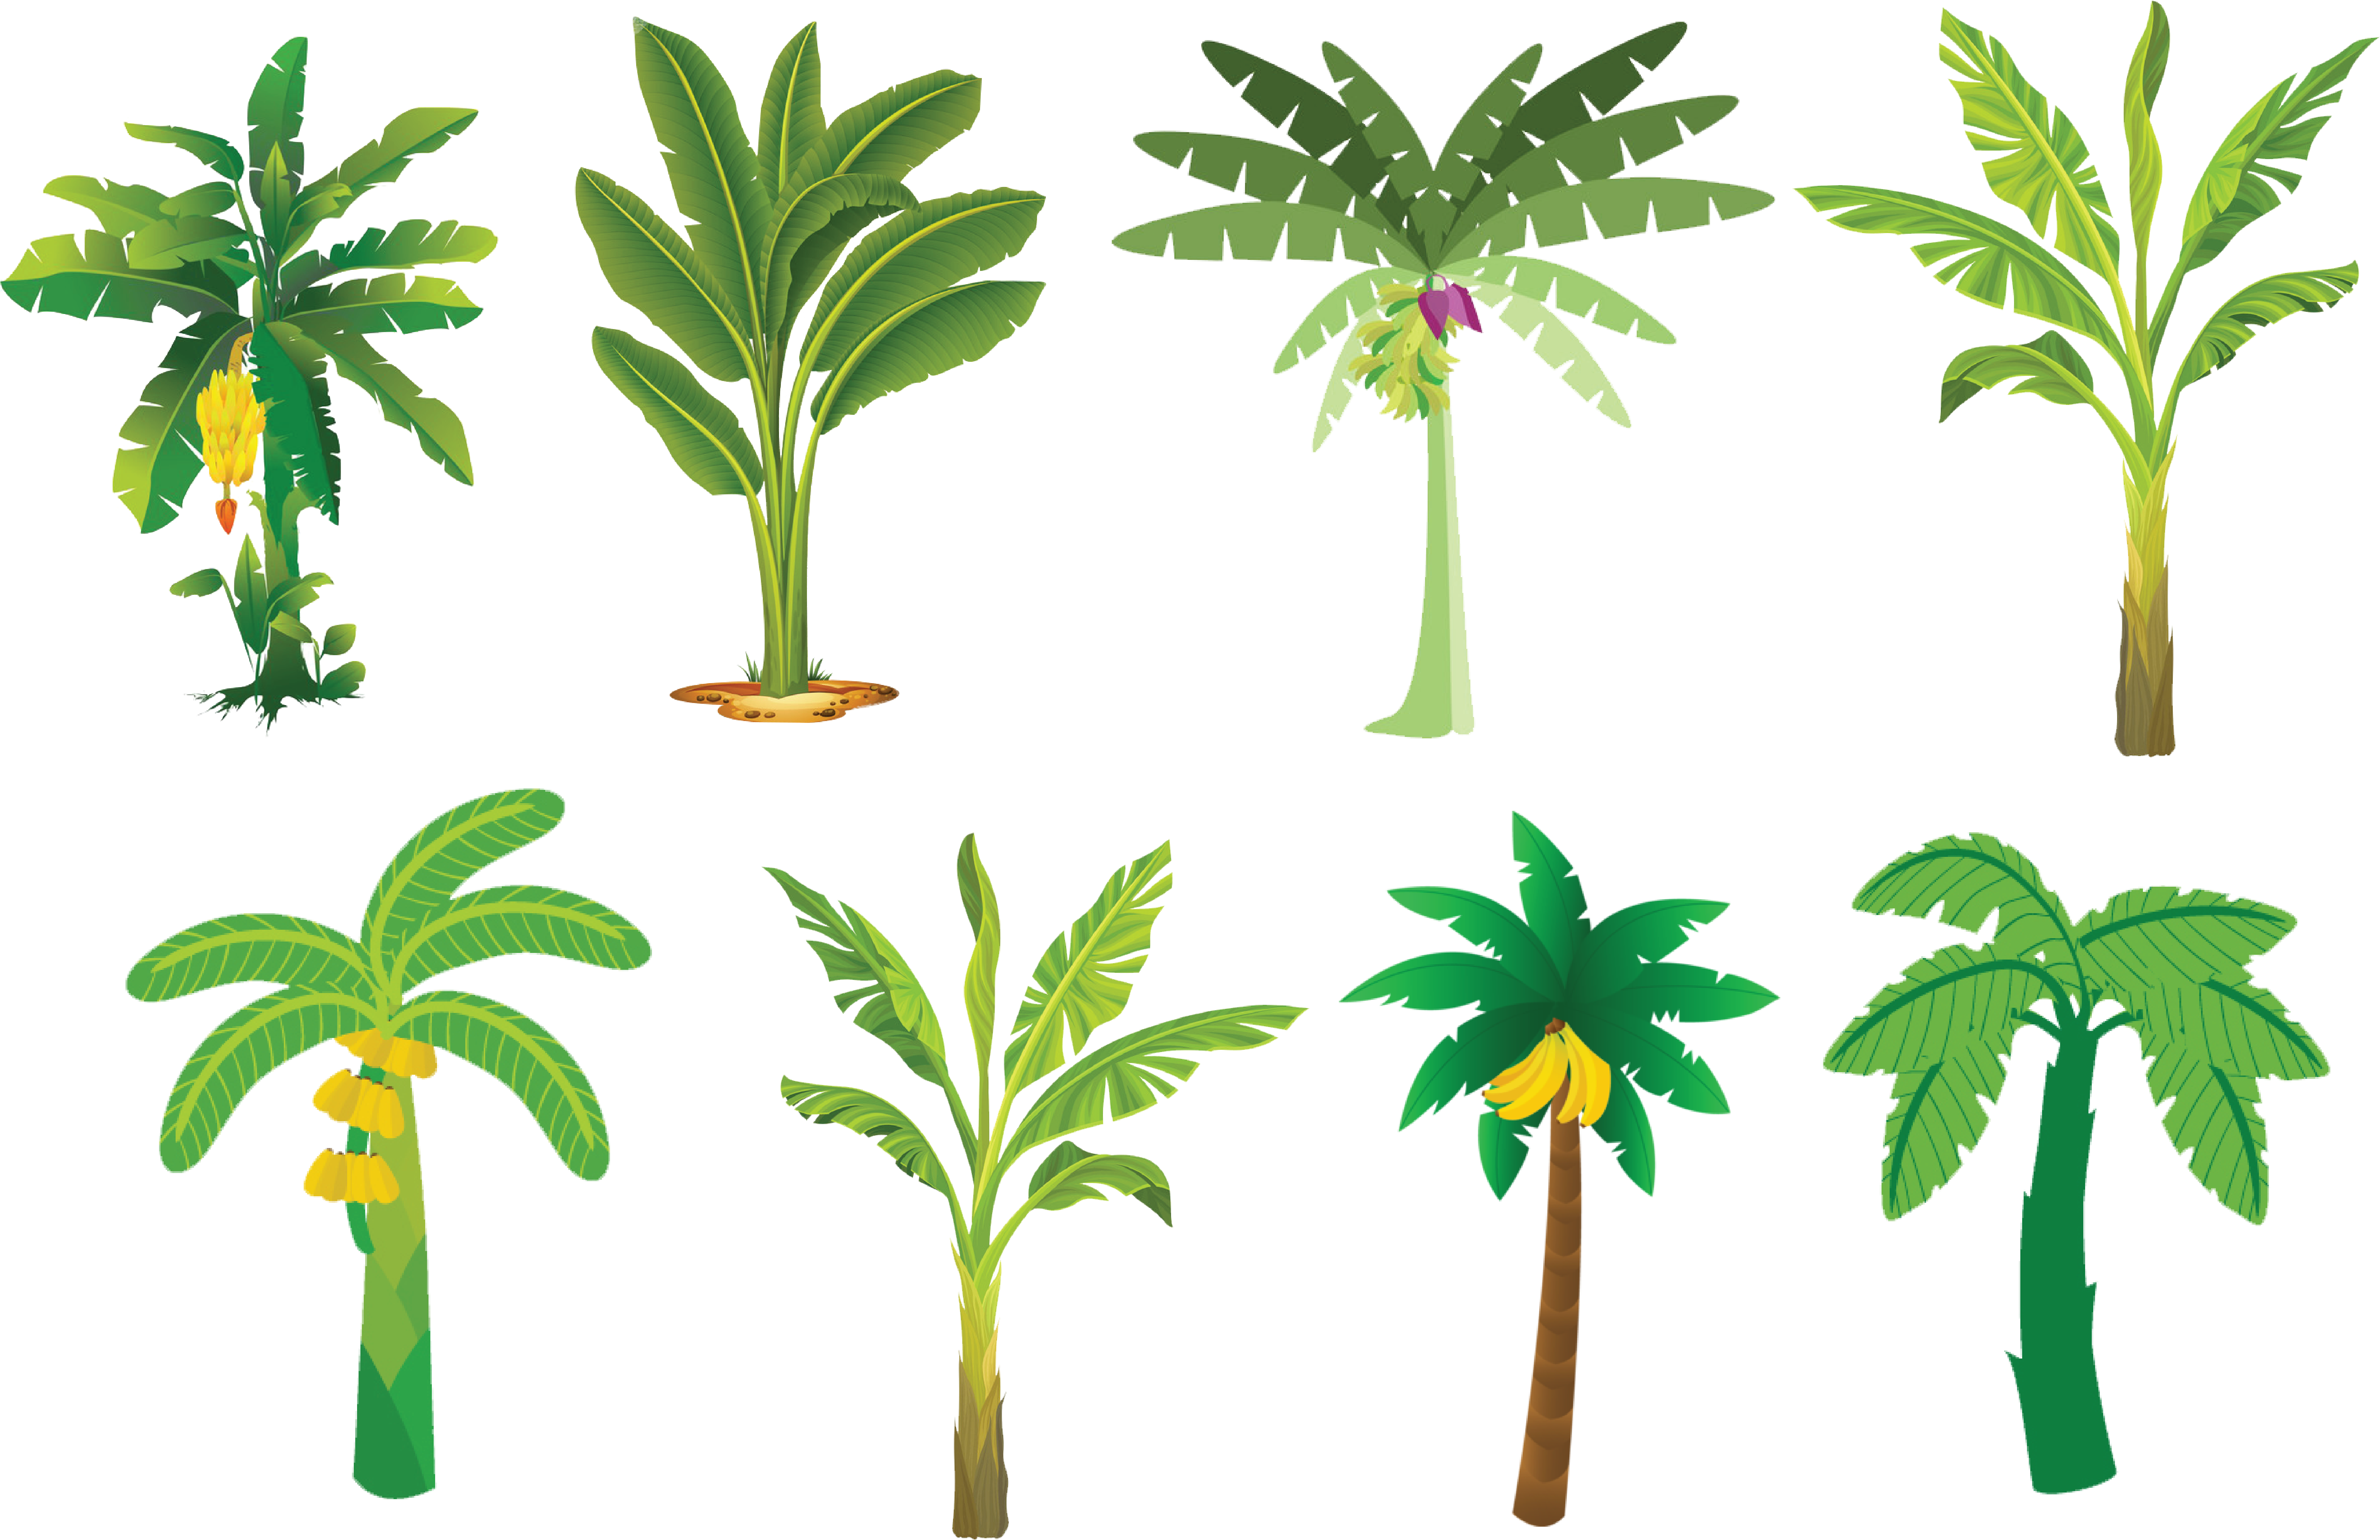 Varietyof Banana Trees Illustration PNG image